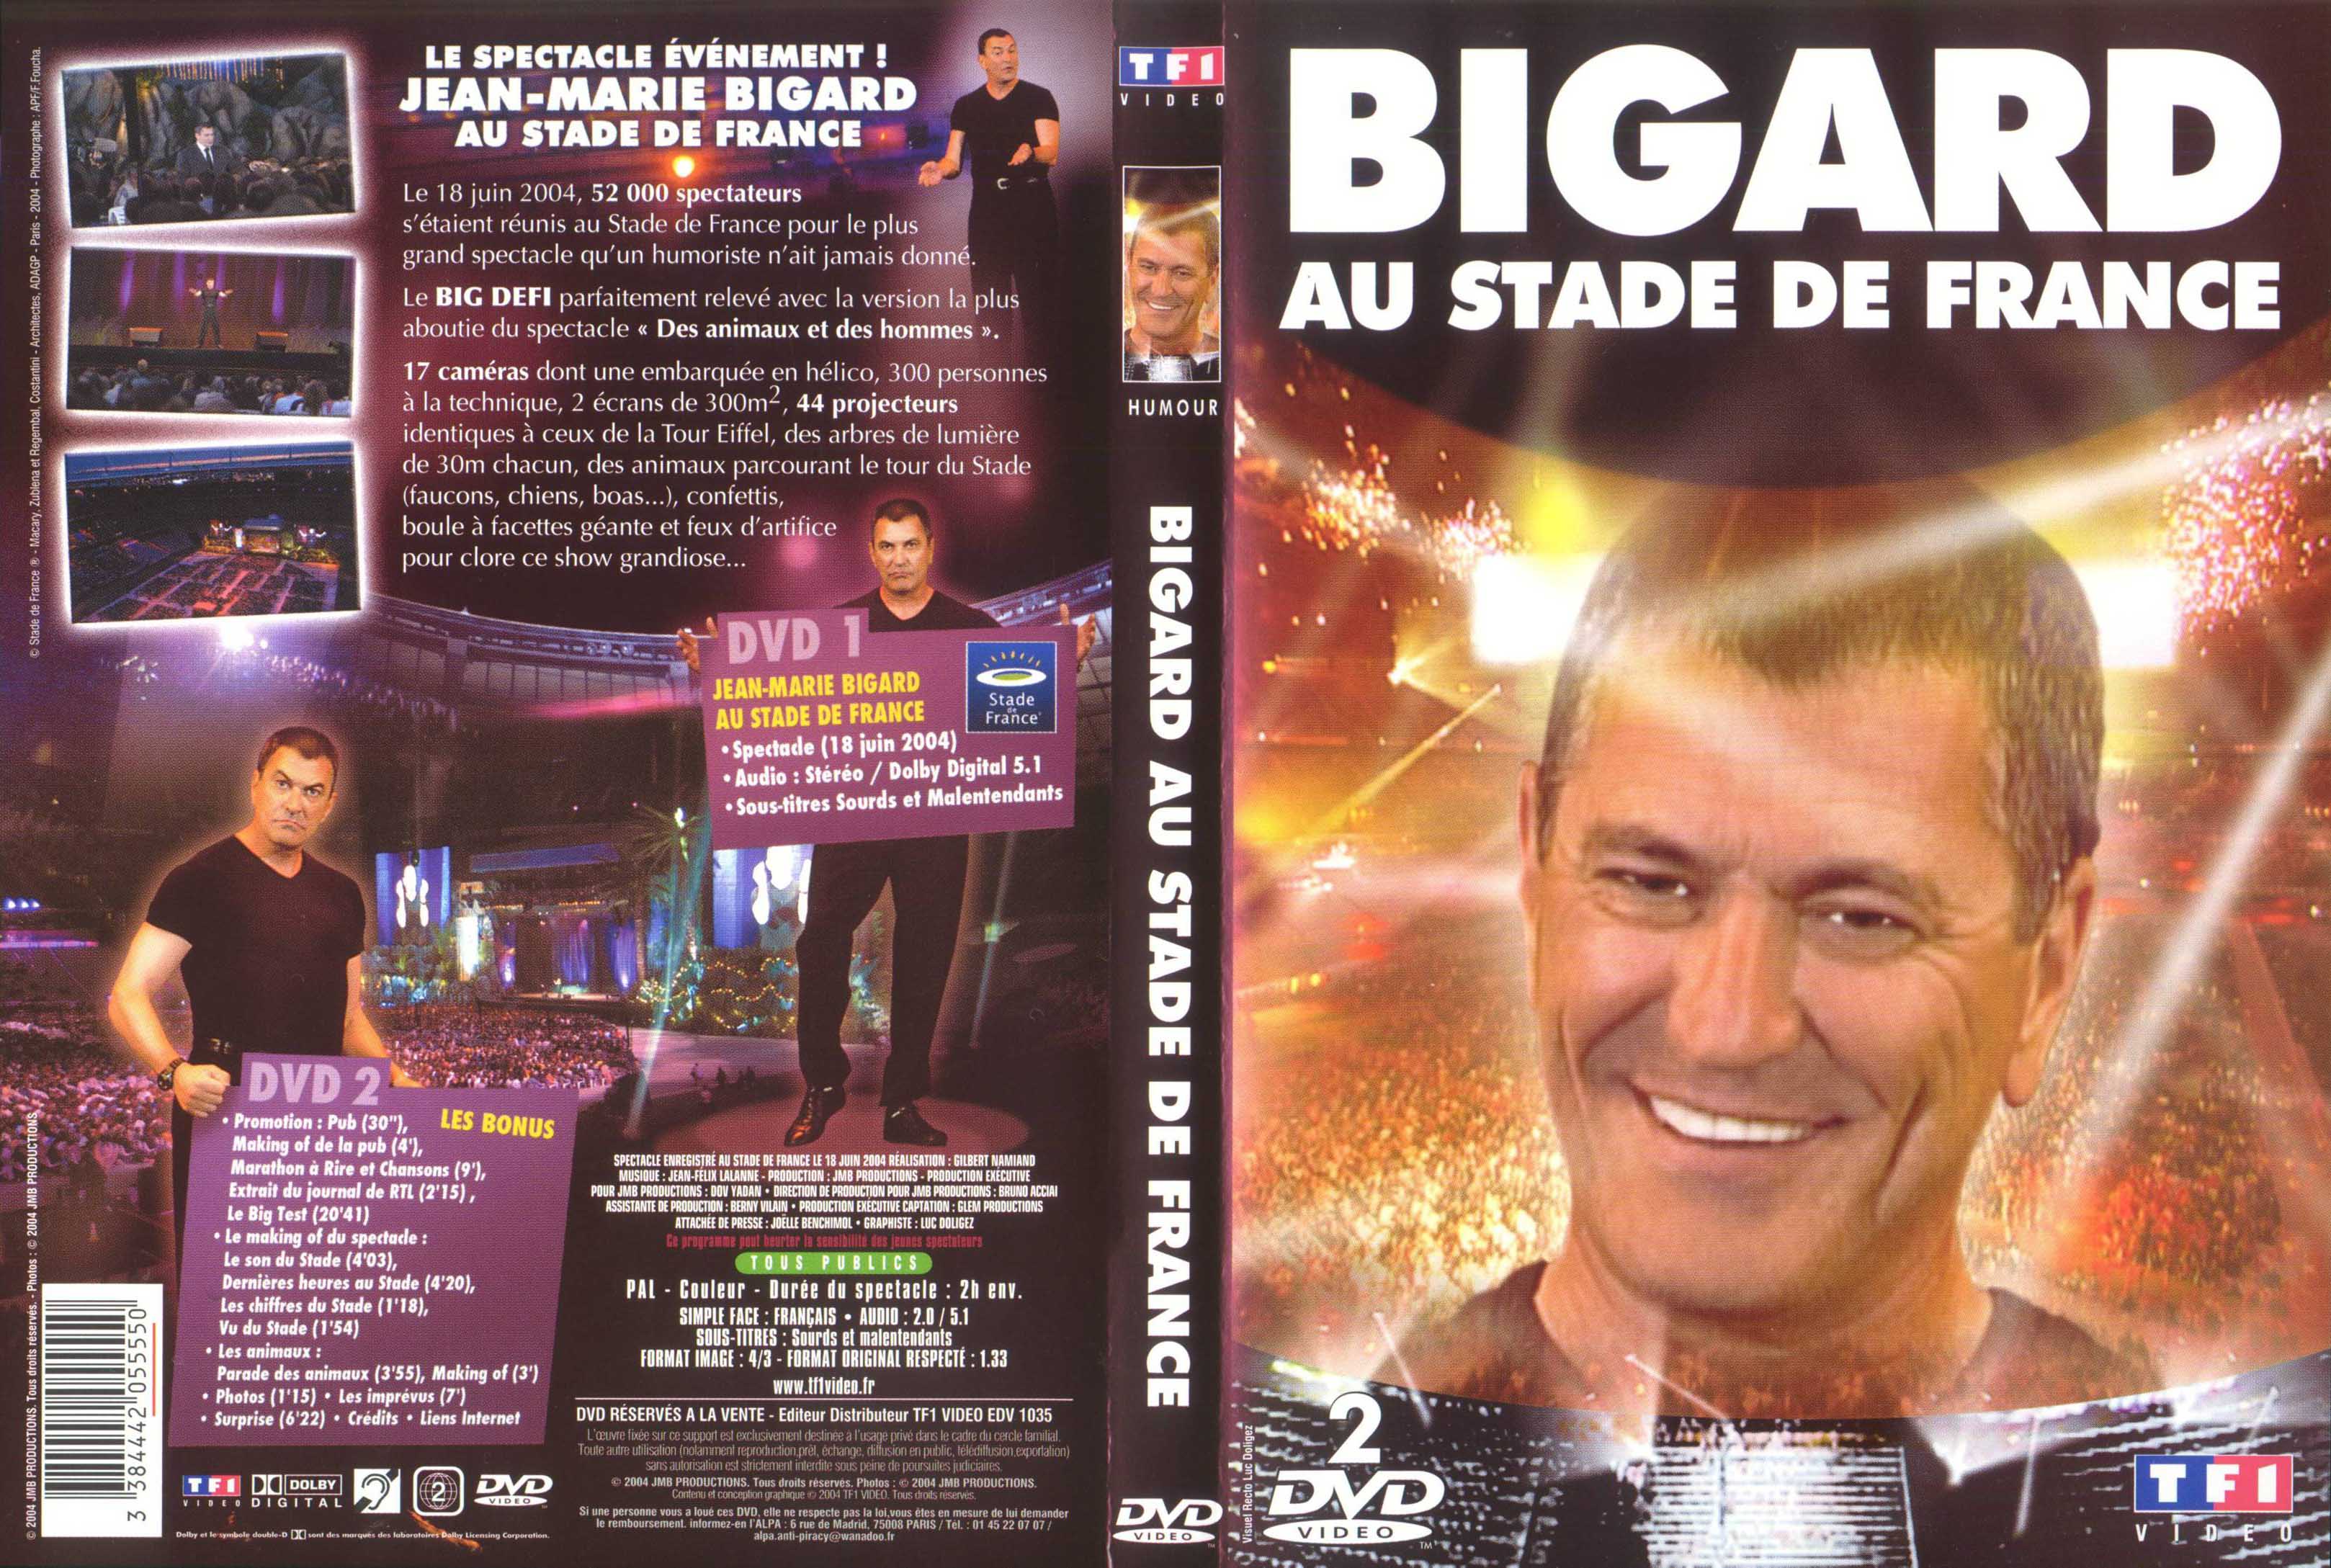 Jaquette DVD Bigard au stade de france